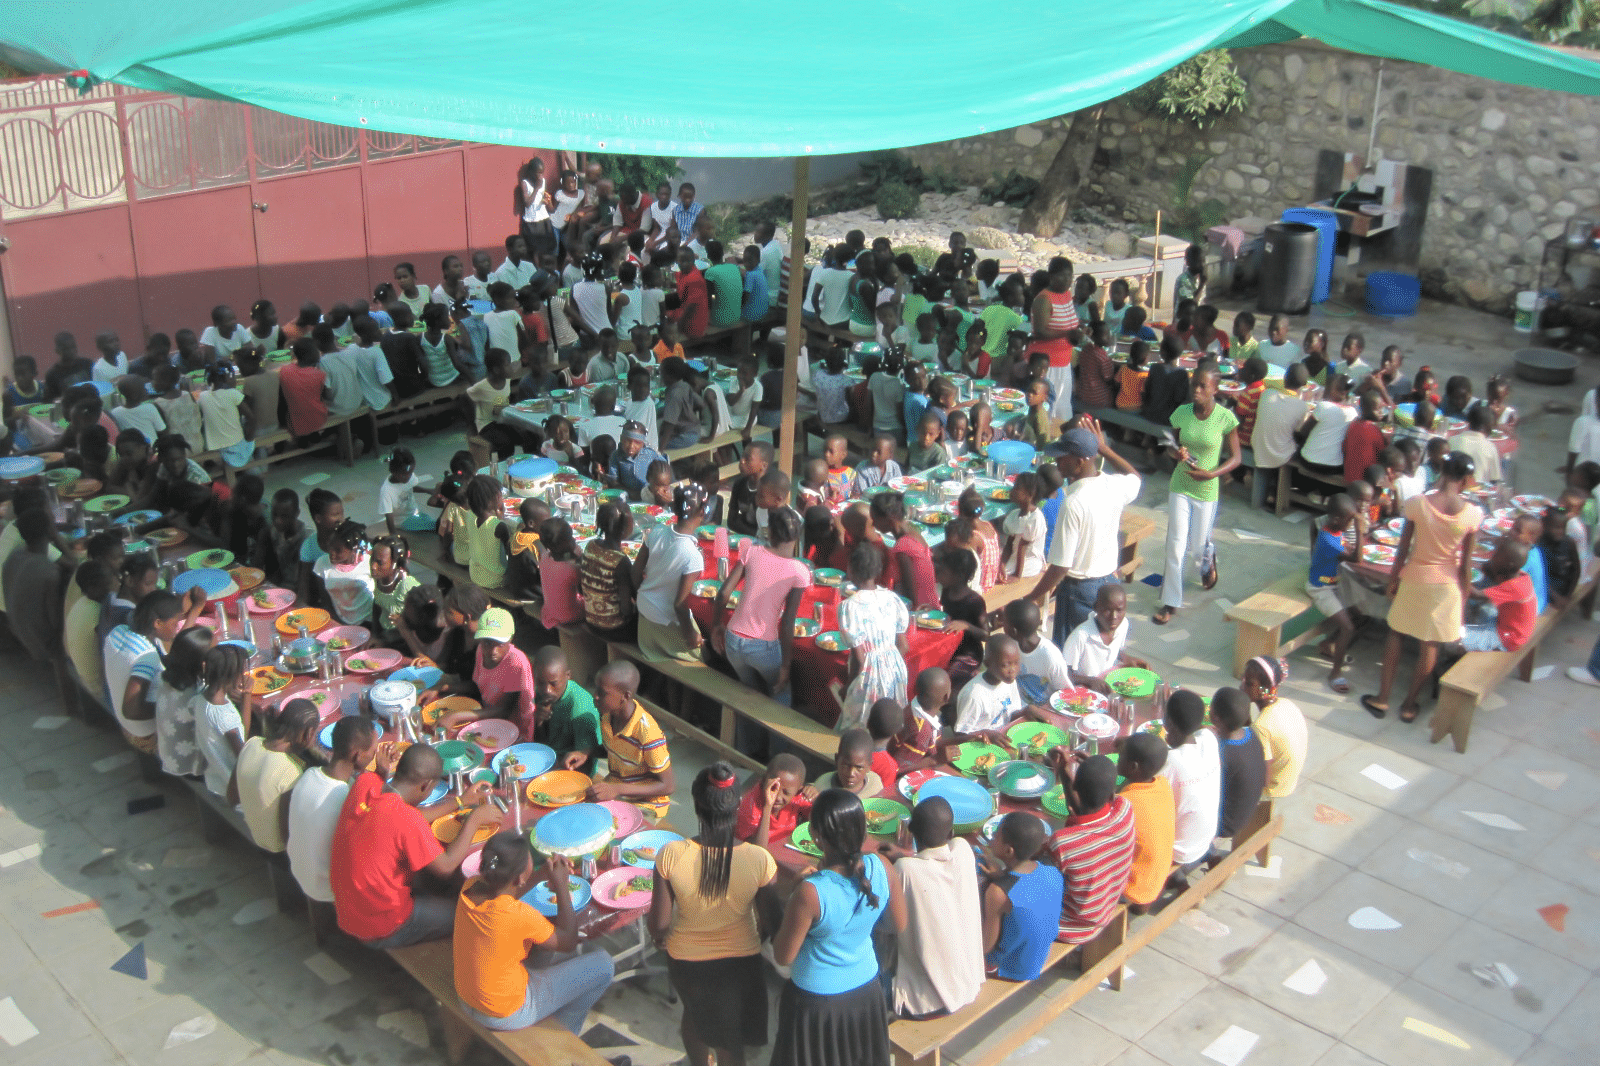 Children on the table eating - feeding program